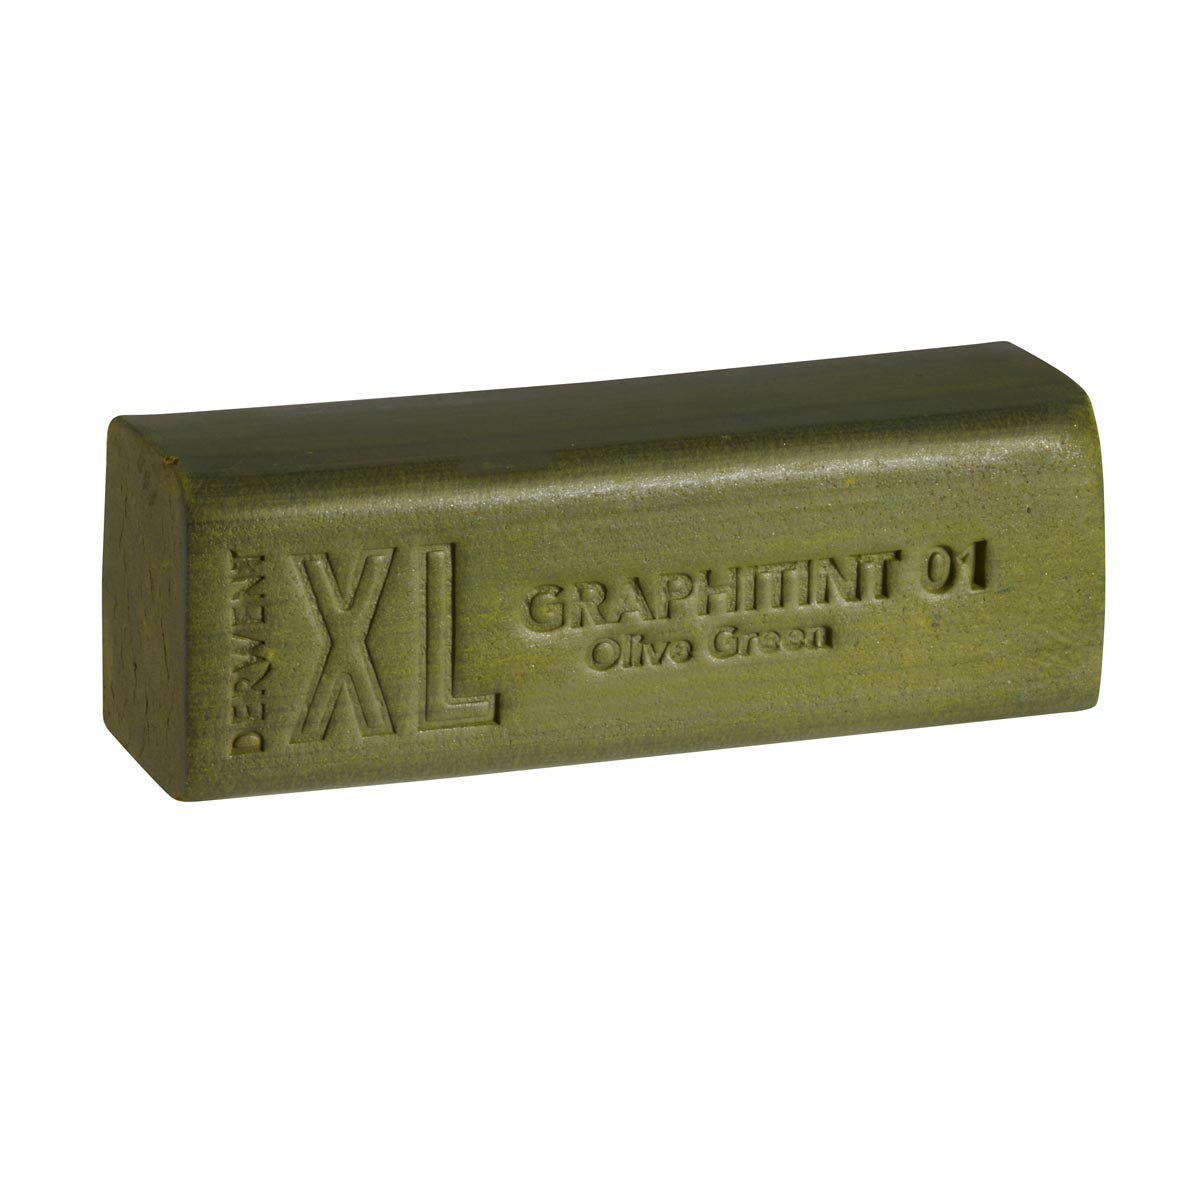 Derwent - Graphitint XL -Block - Olive Green